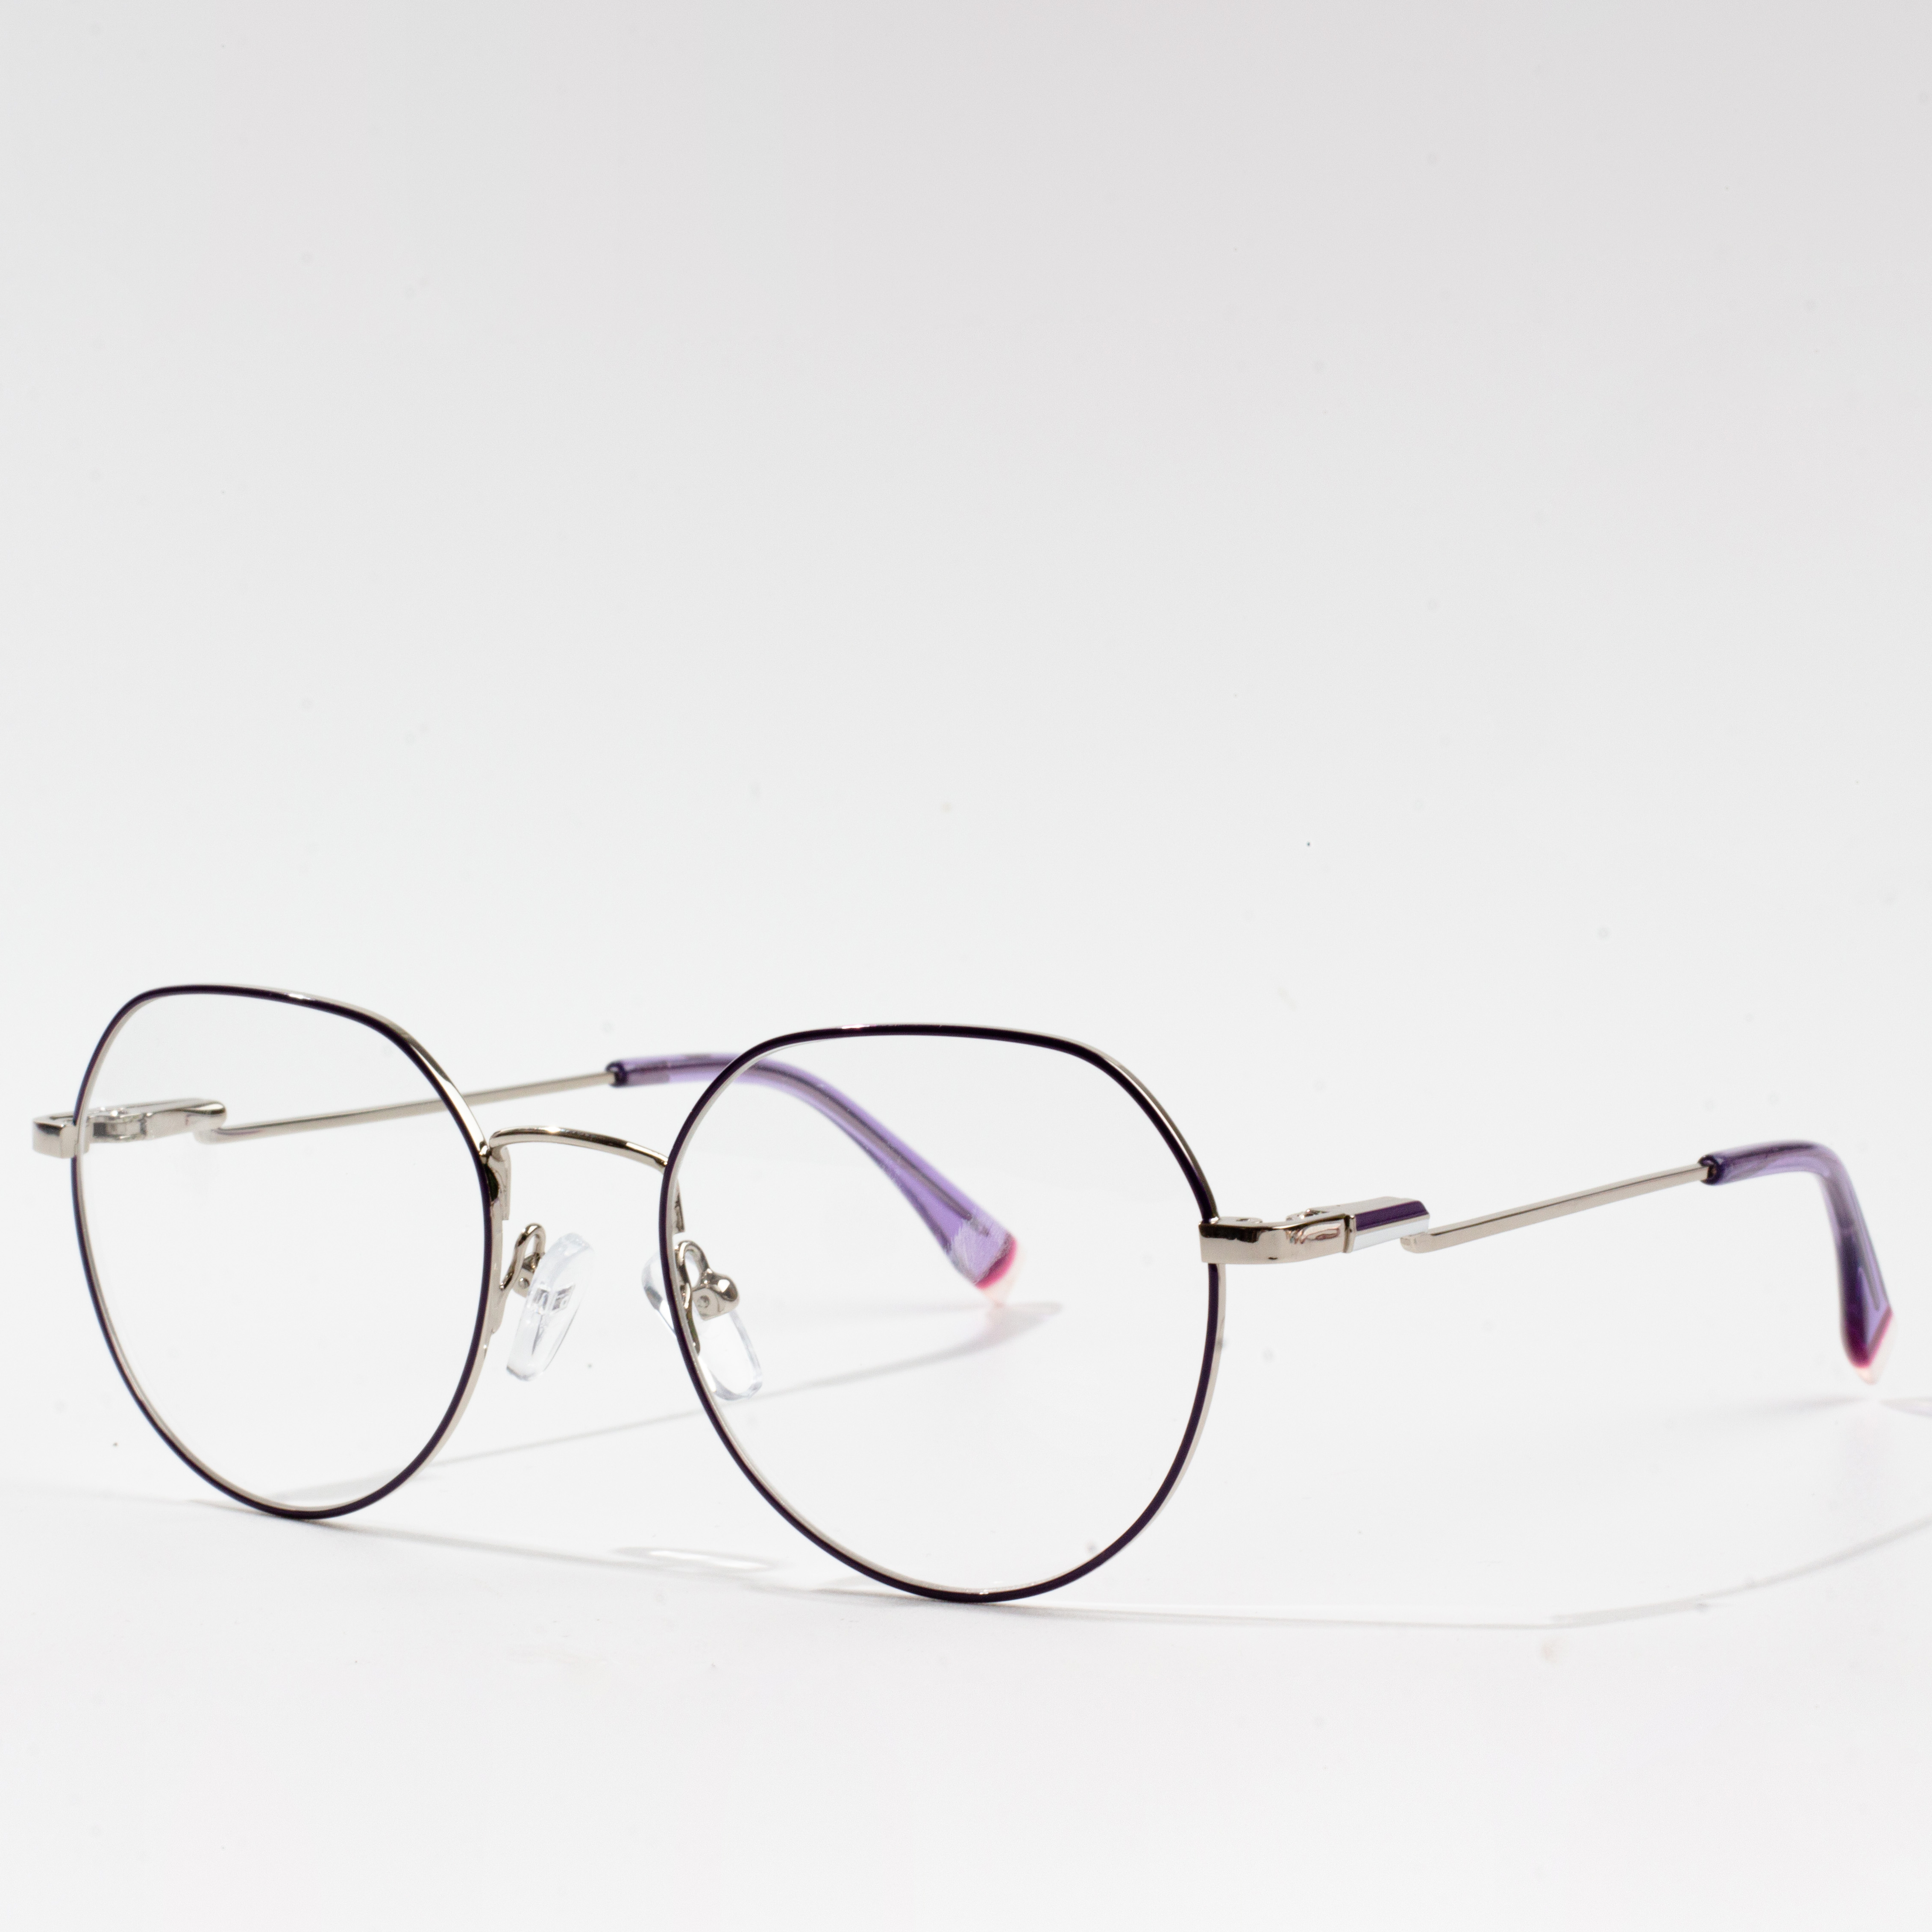 els marcs d'ulleres més populars